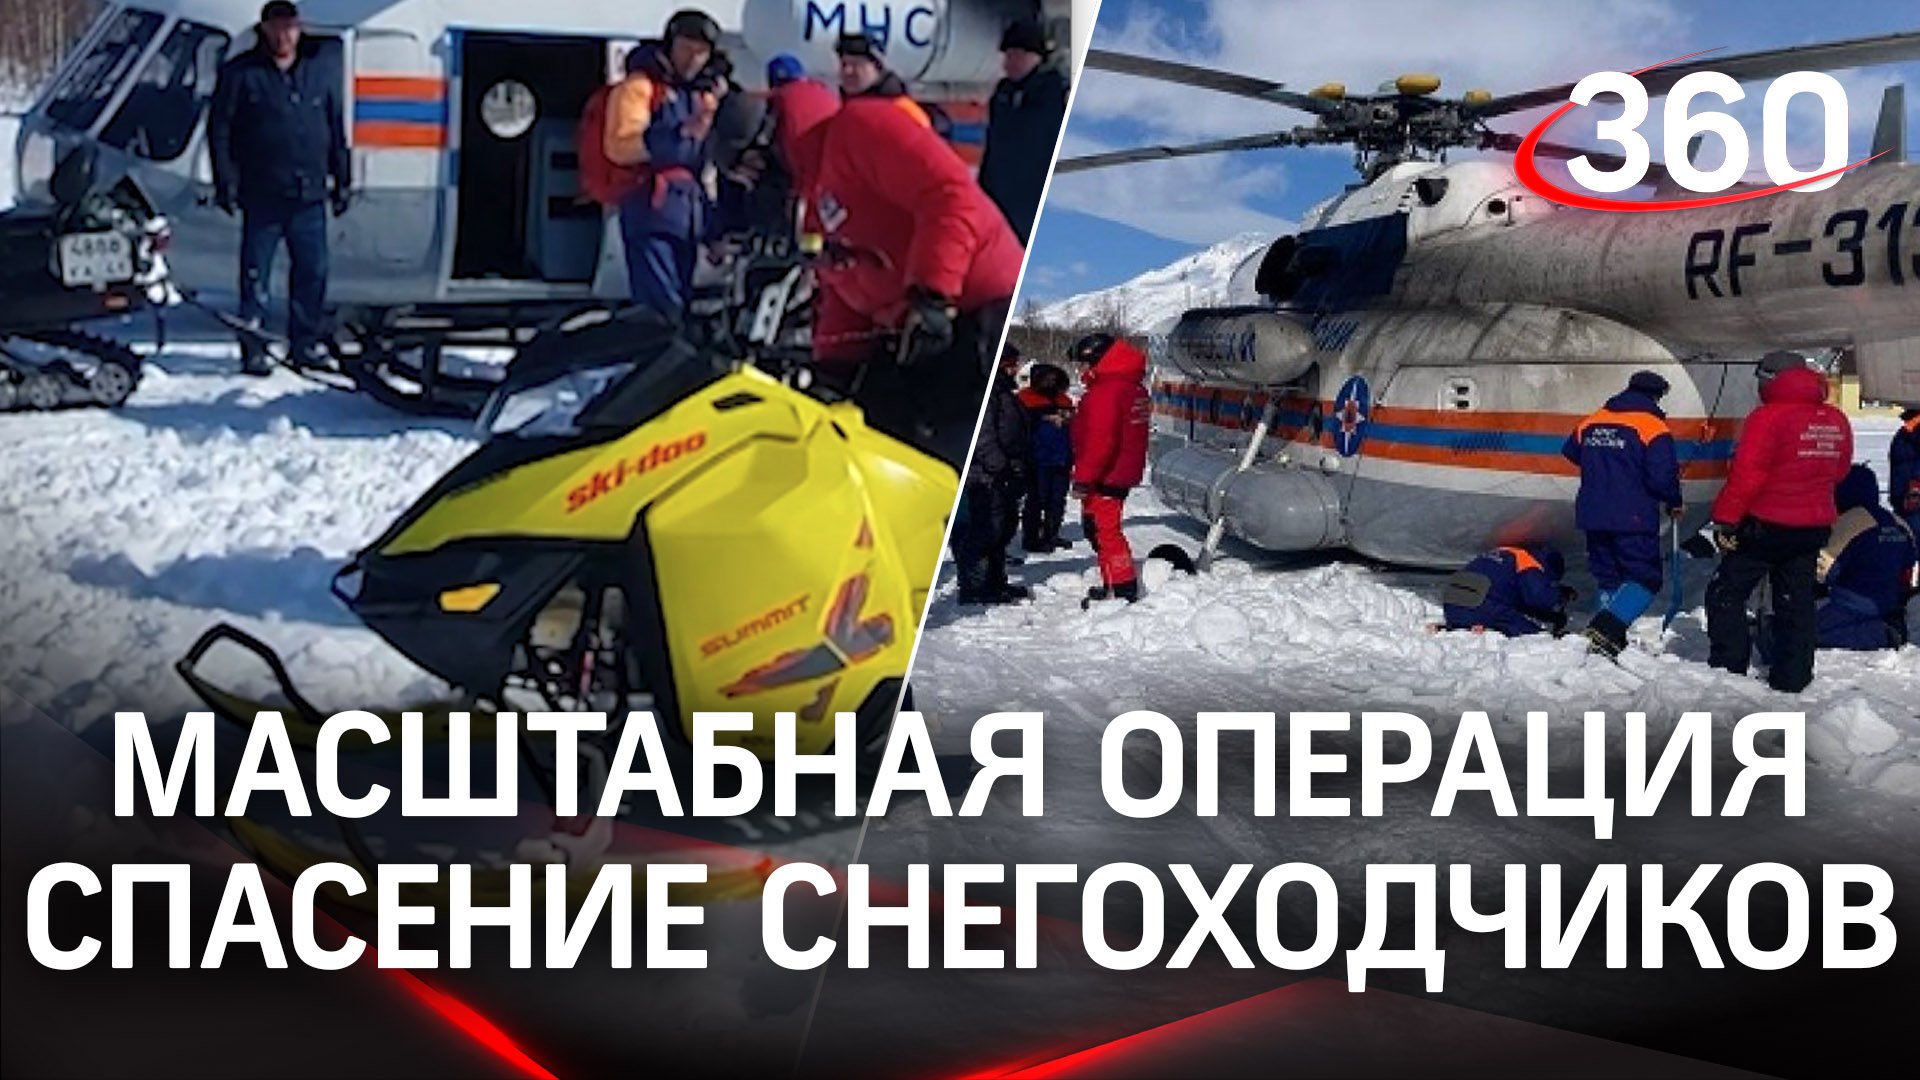 Больше 100 км прошли спасатели на Камчатке, чтобы найти потерявшихся снегоходчиков